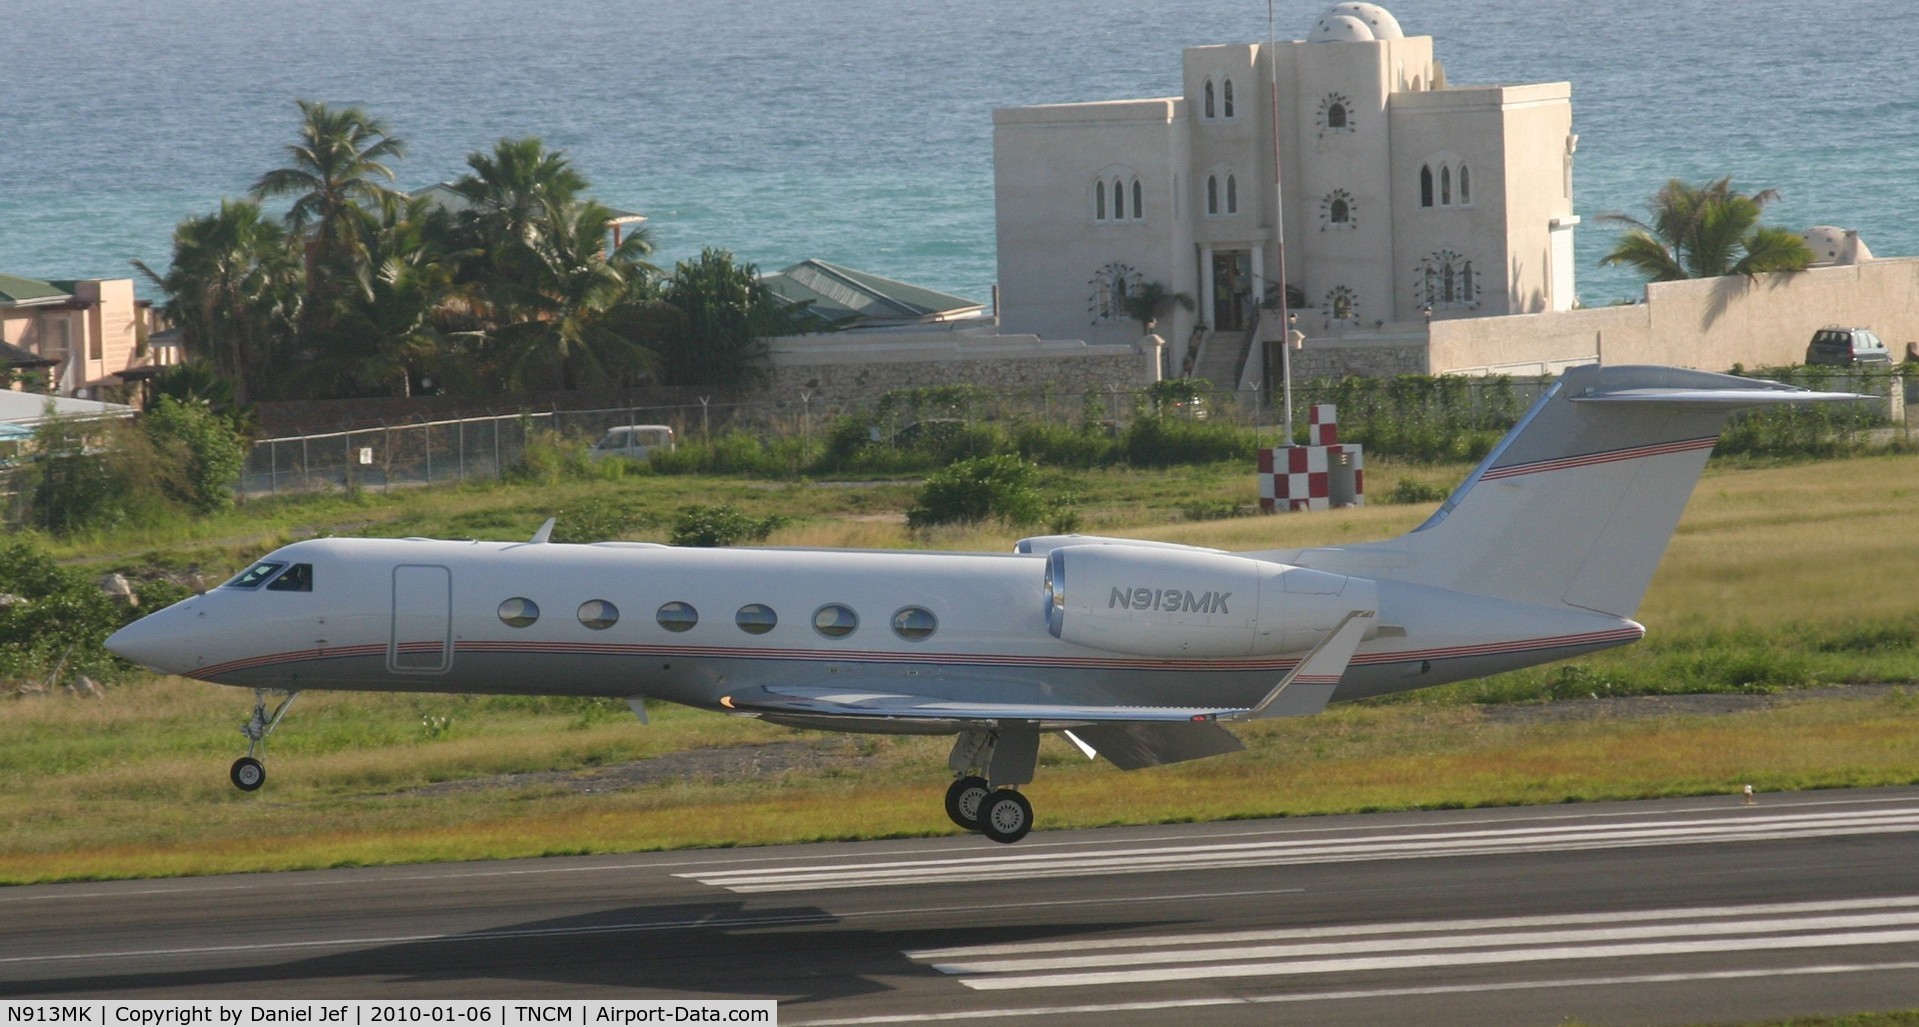 N913MK, 2007 Gulfstream Aerospace GIV-X (G450) C/N 4075, N913MK landing at TNCM